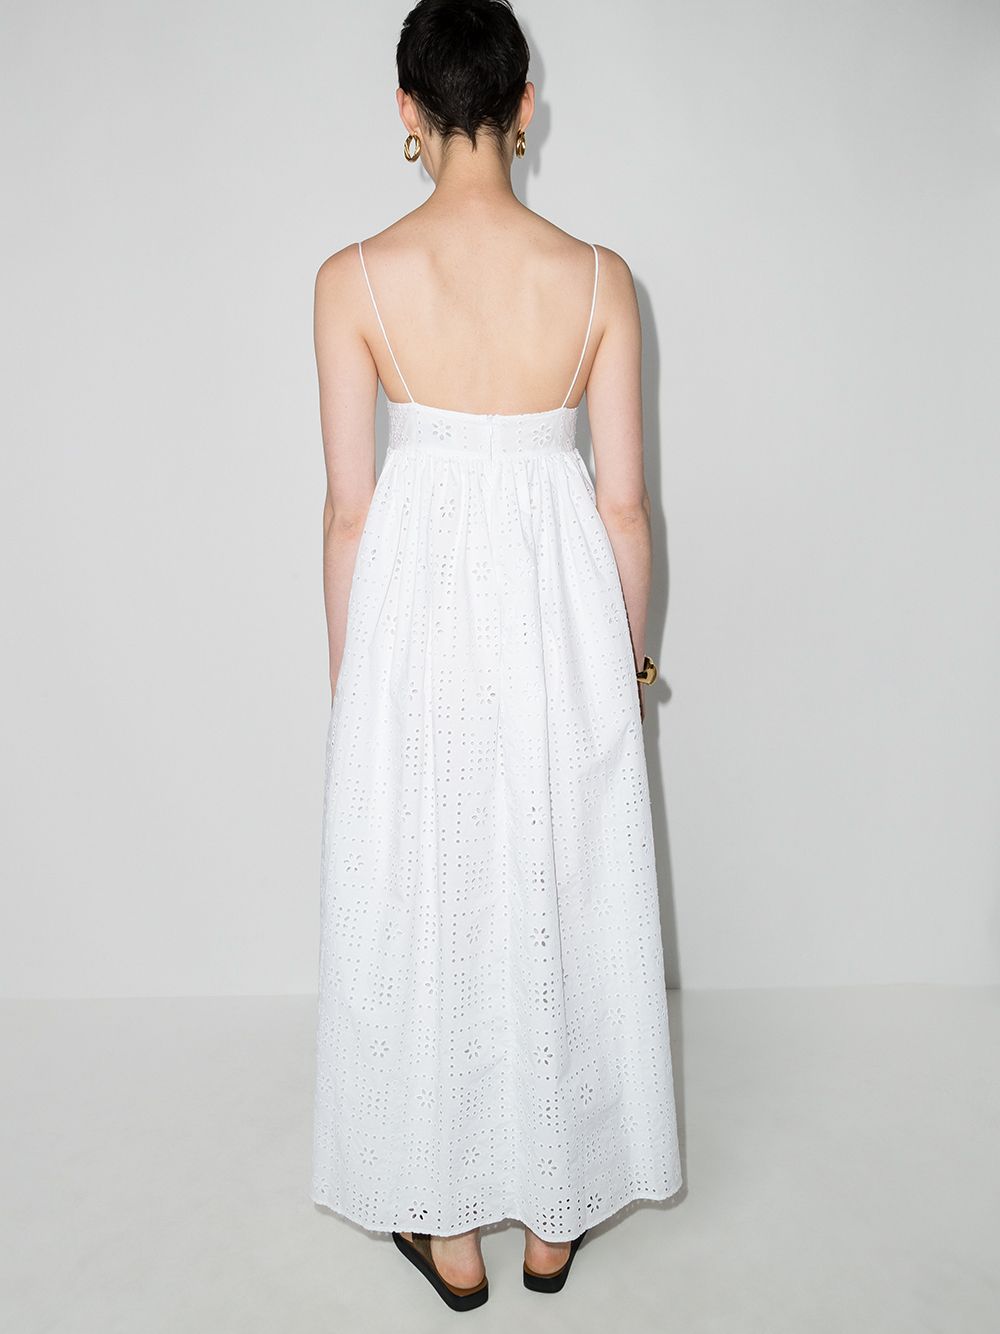 фото Matteau платье макси с английской вышивкой